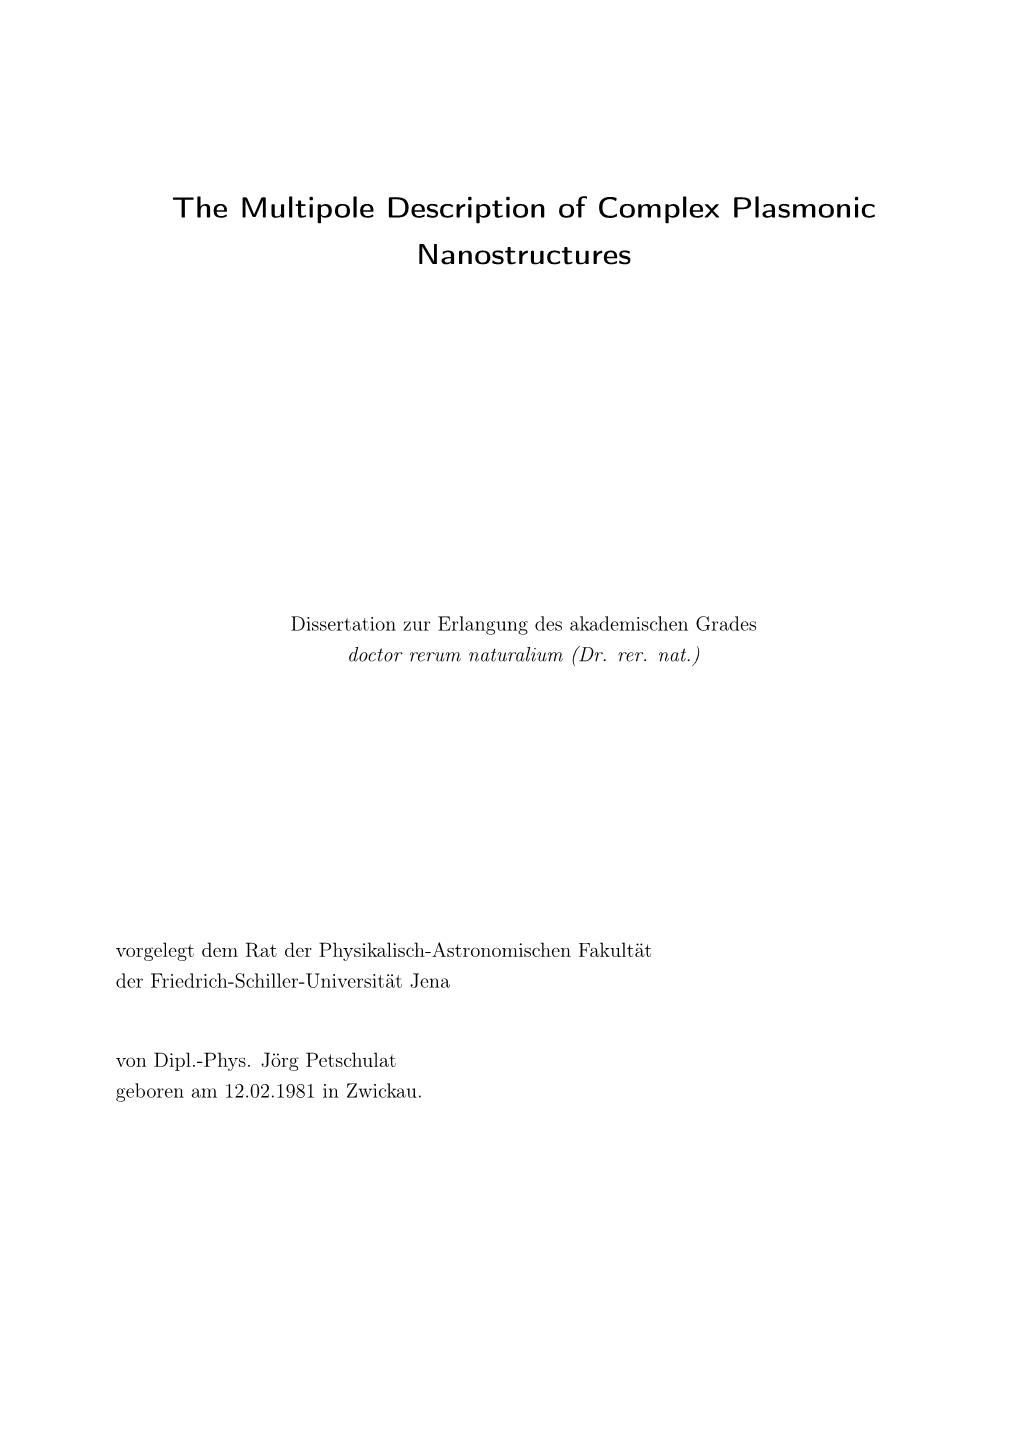 The Multipole Description of Complex Plasmonic Nanostructures